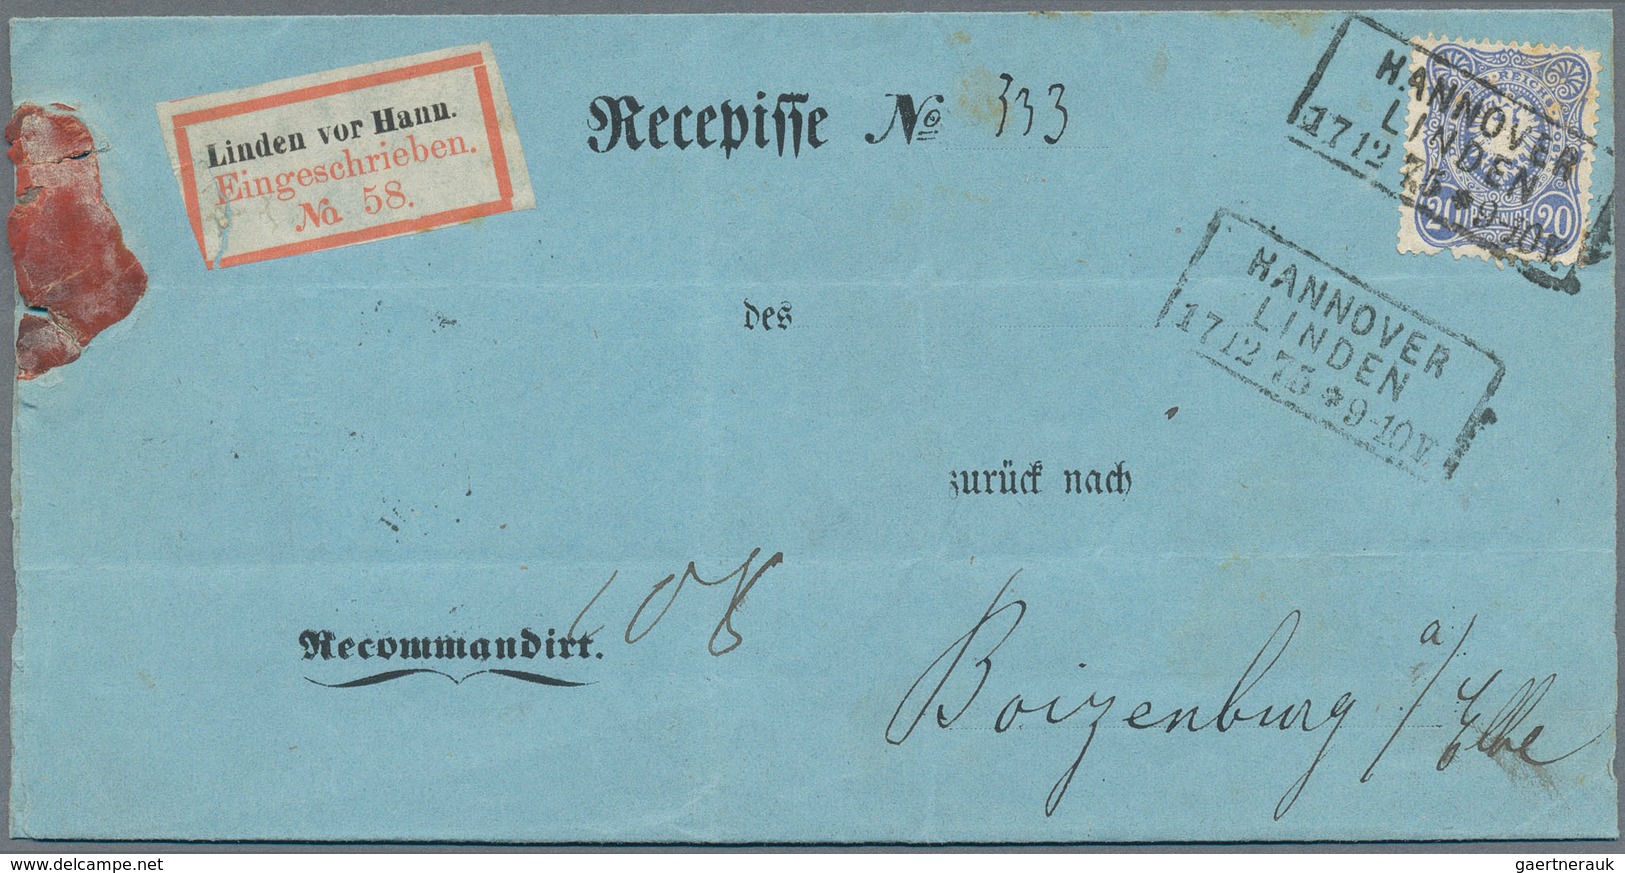 Altdeutschland und Deutsches Reich: 1868/1944 (ca.), EINSCHREIBEN, umfassende Sammlung von ca. 230 E